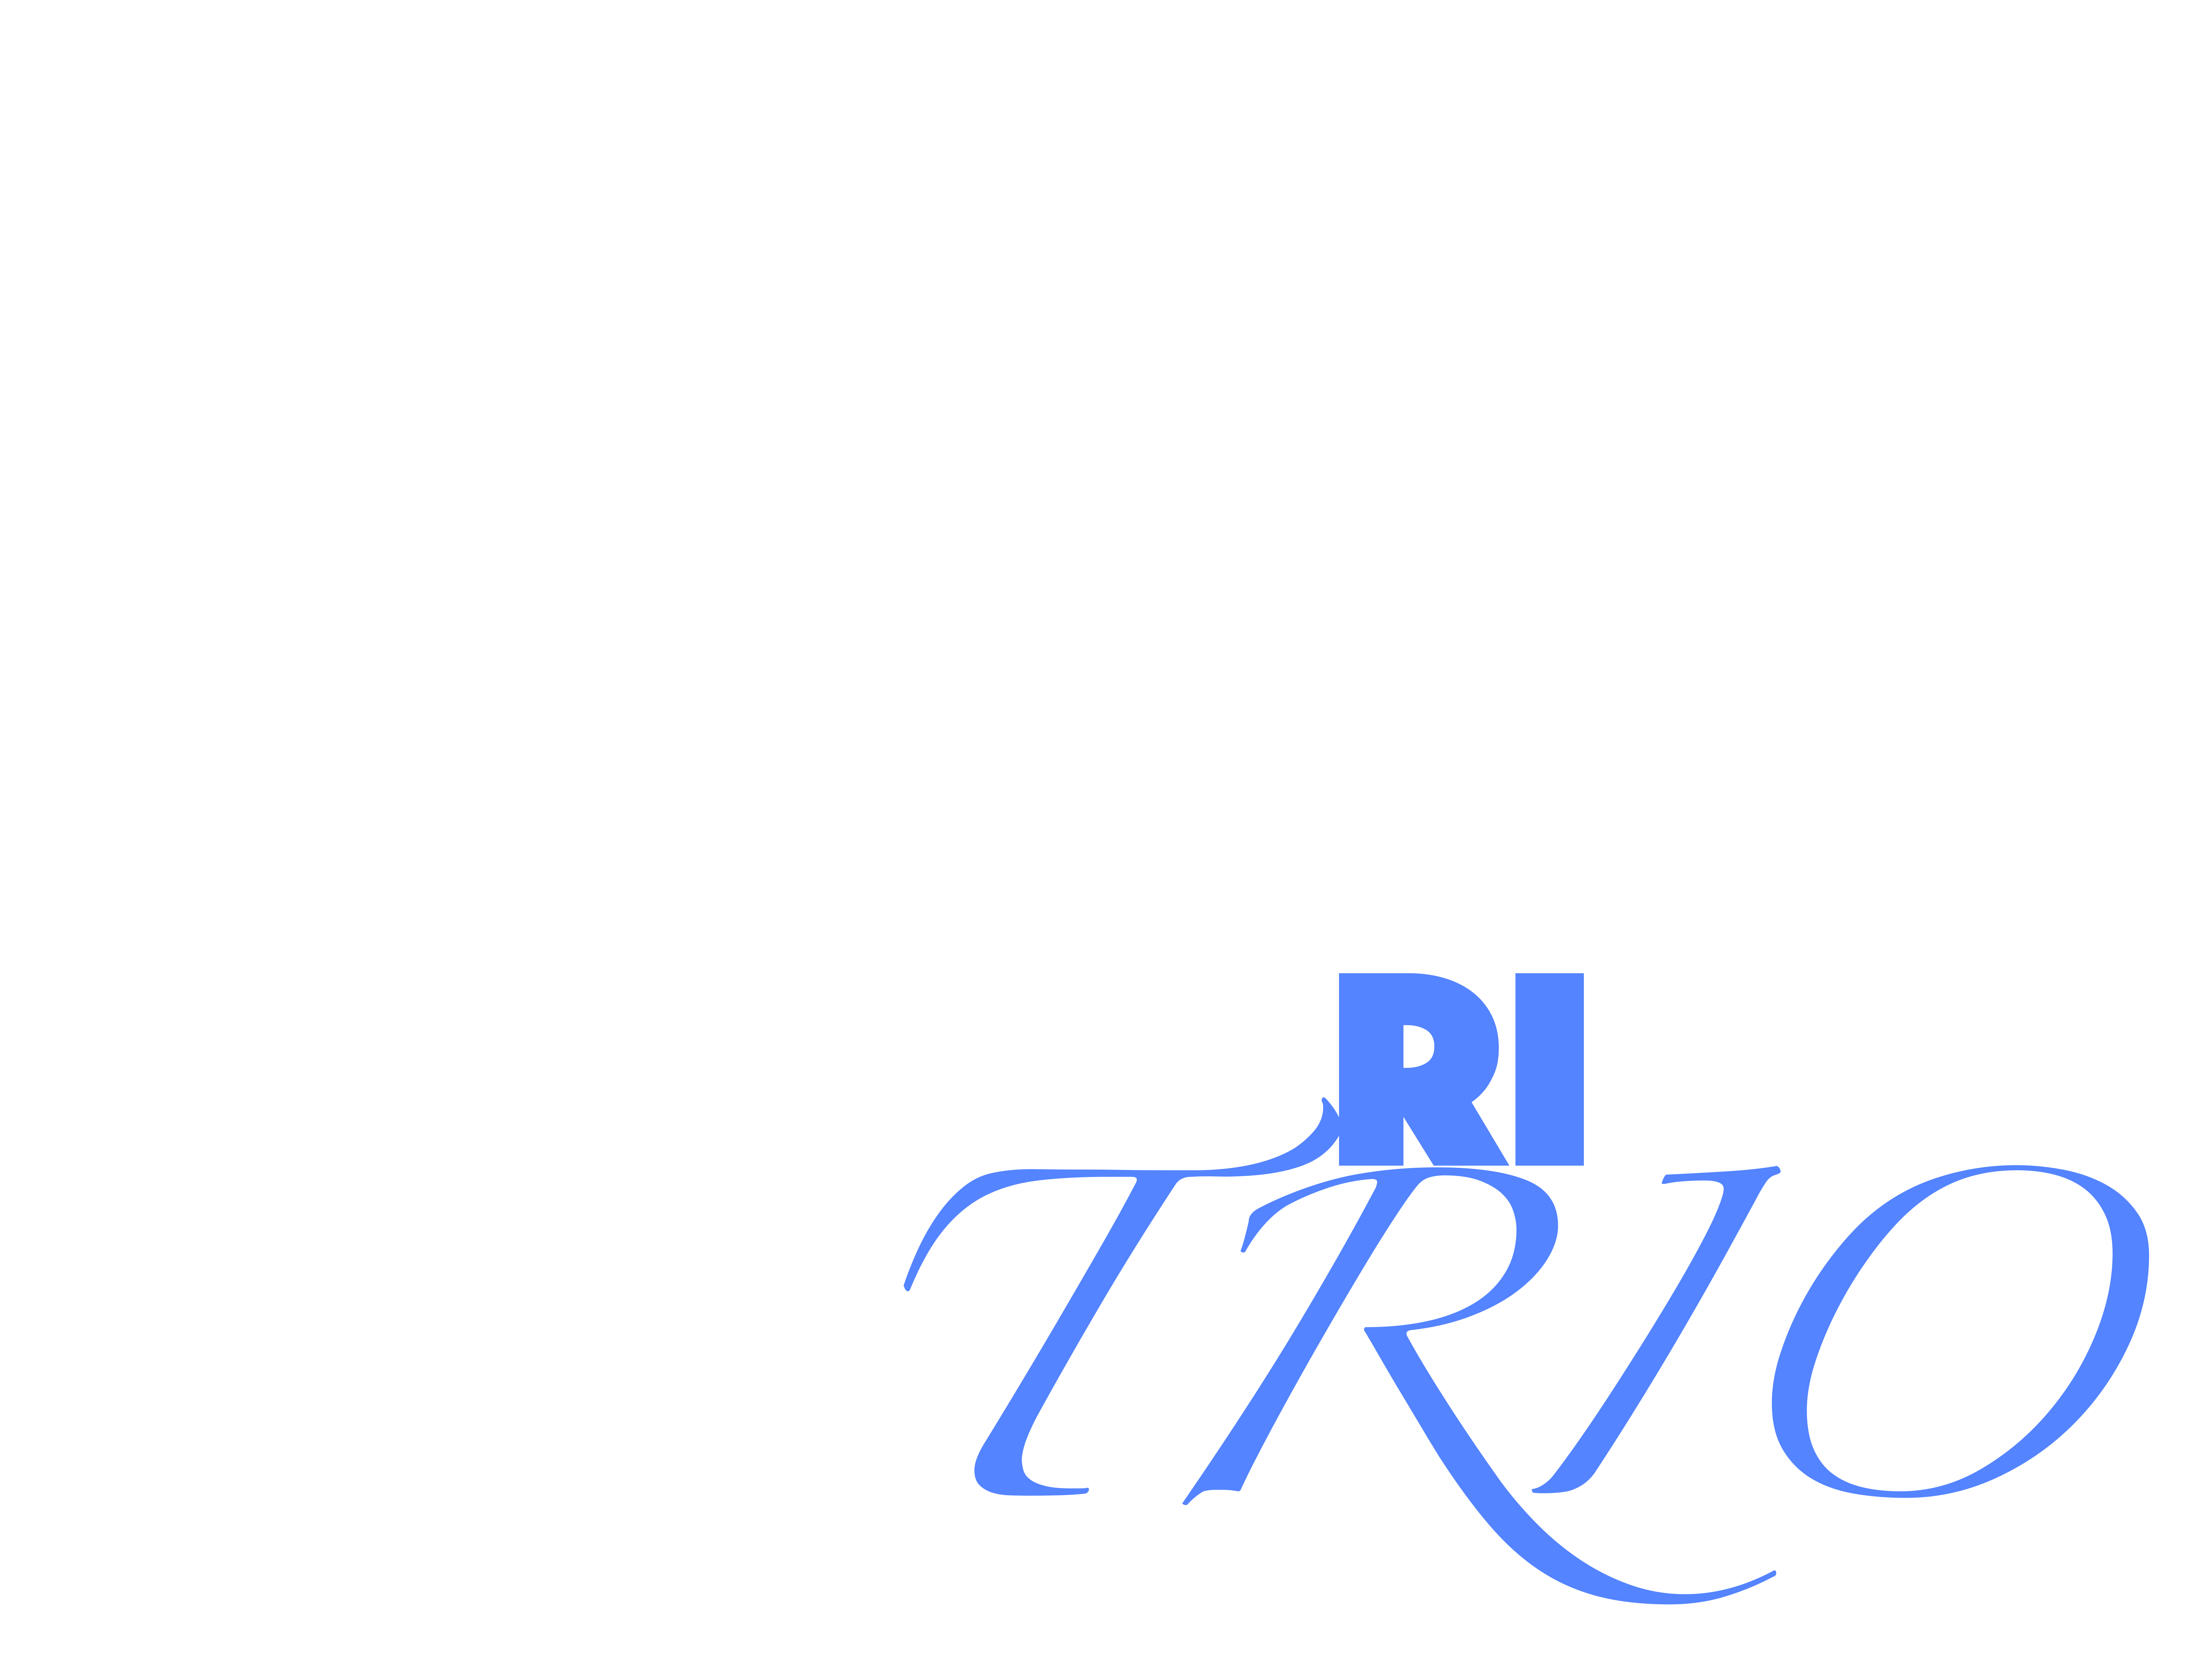 Trio Logo